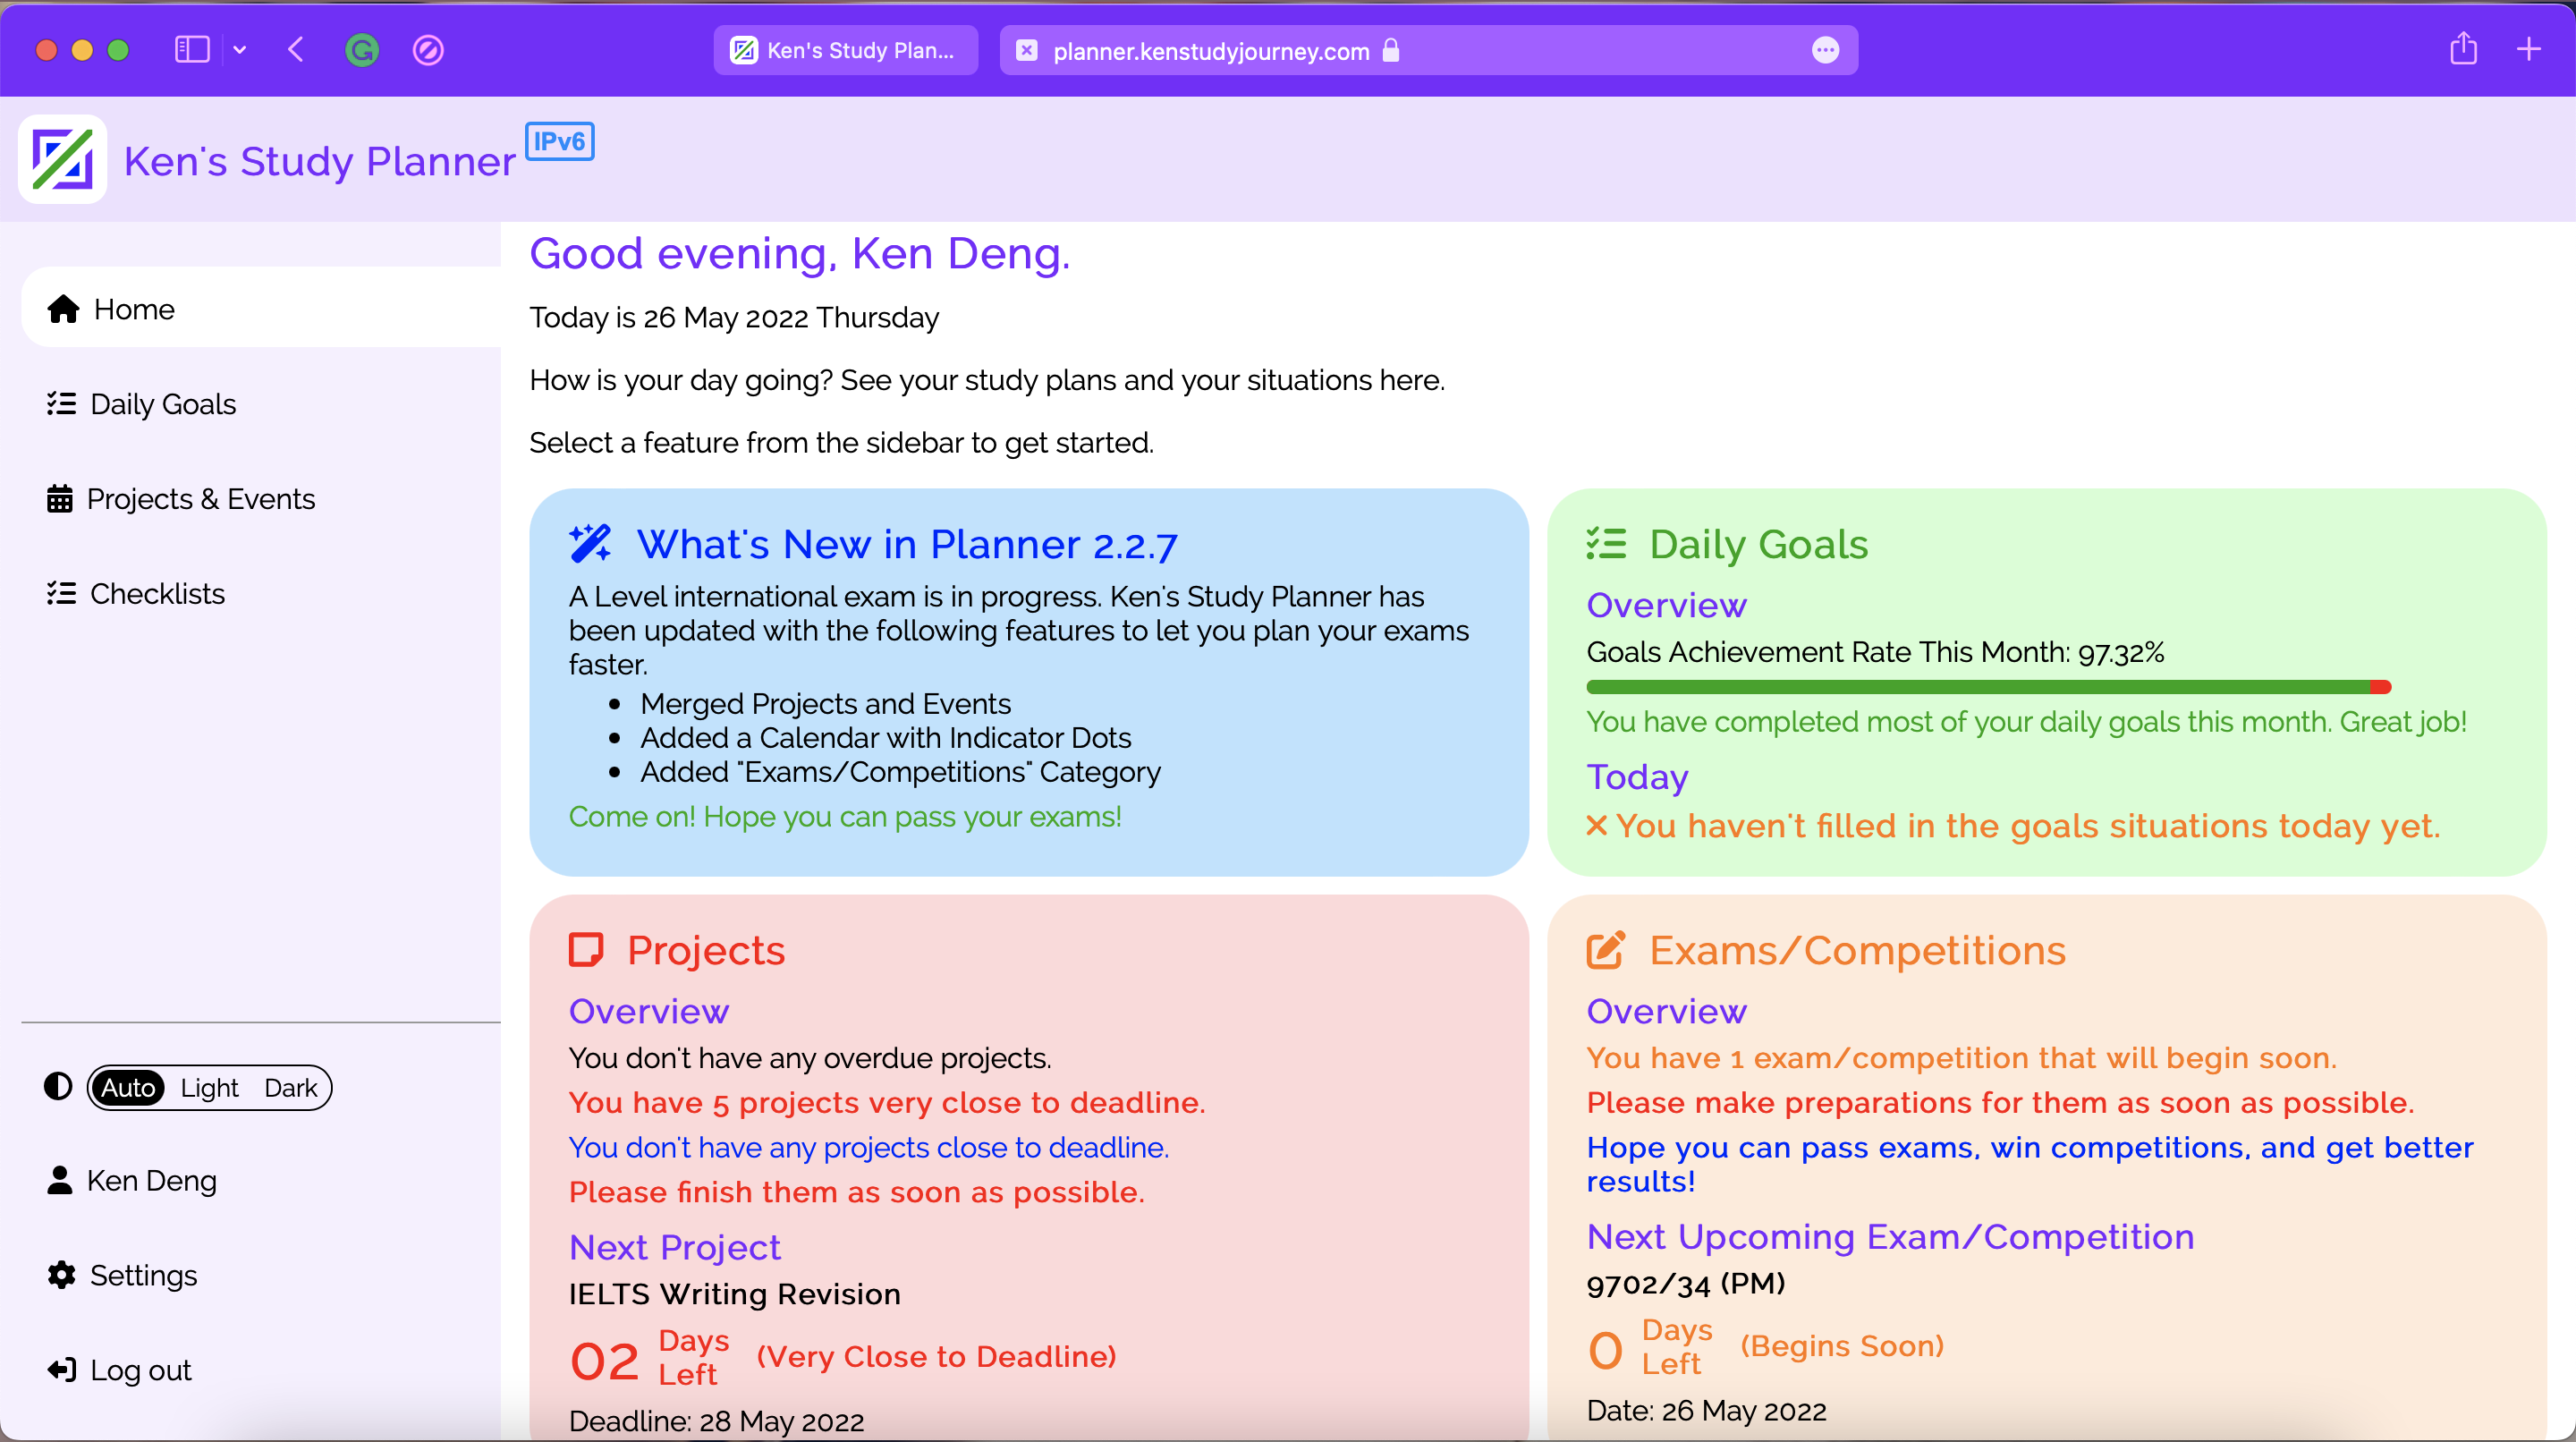 Ken's Study Planner App